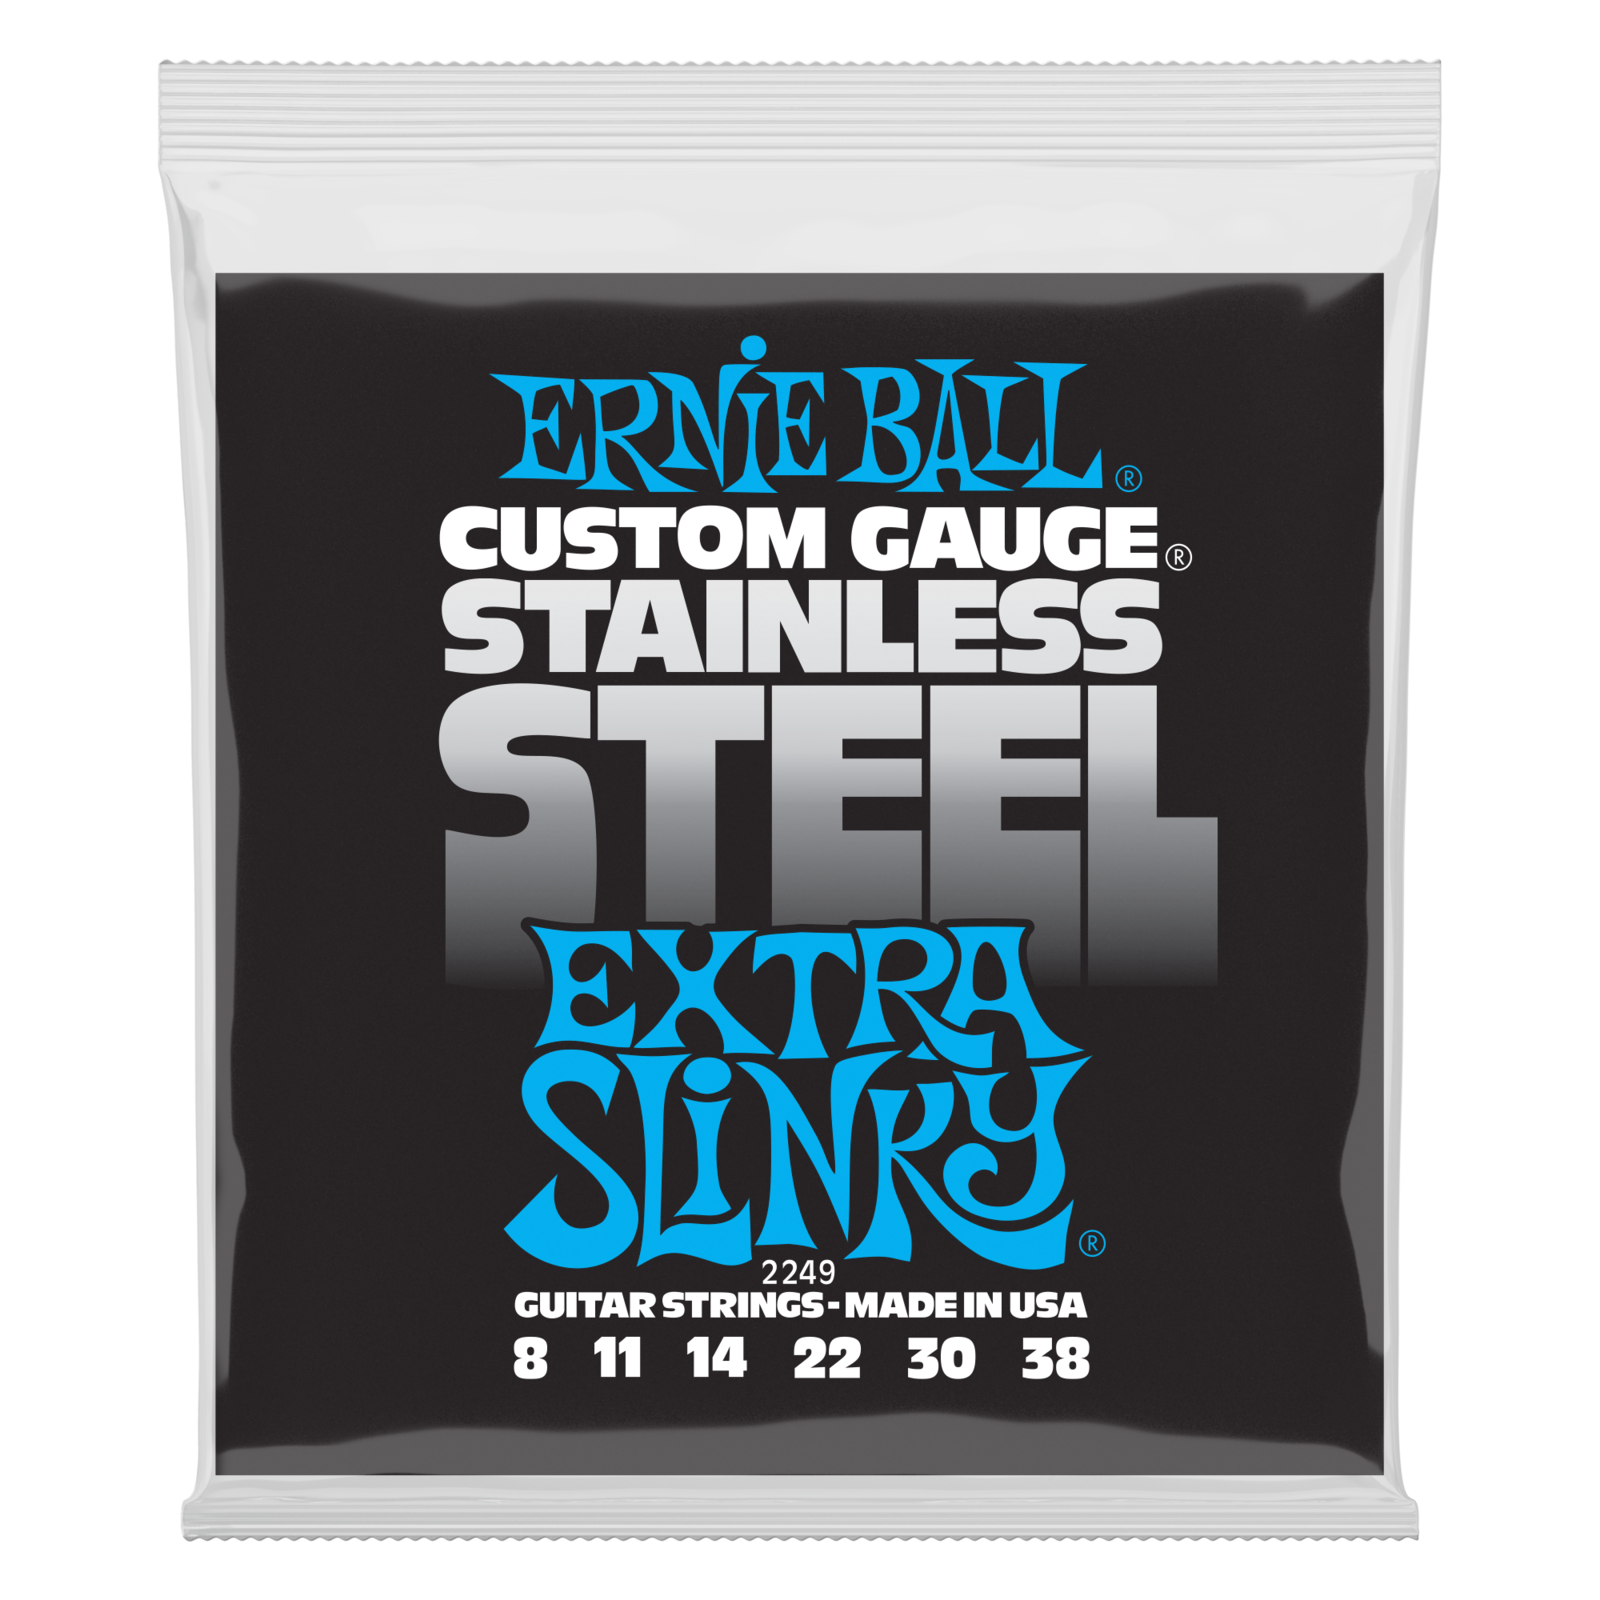 Struny pre elektrickú gitaru Ernie Ball 2249 Stainless Steel Extra Slinky